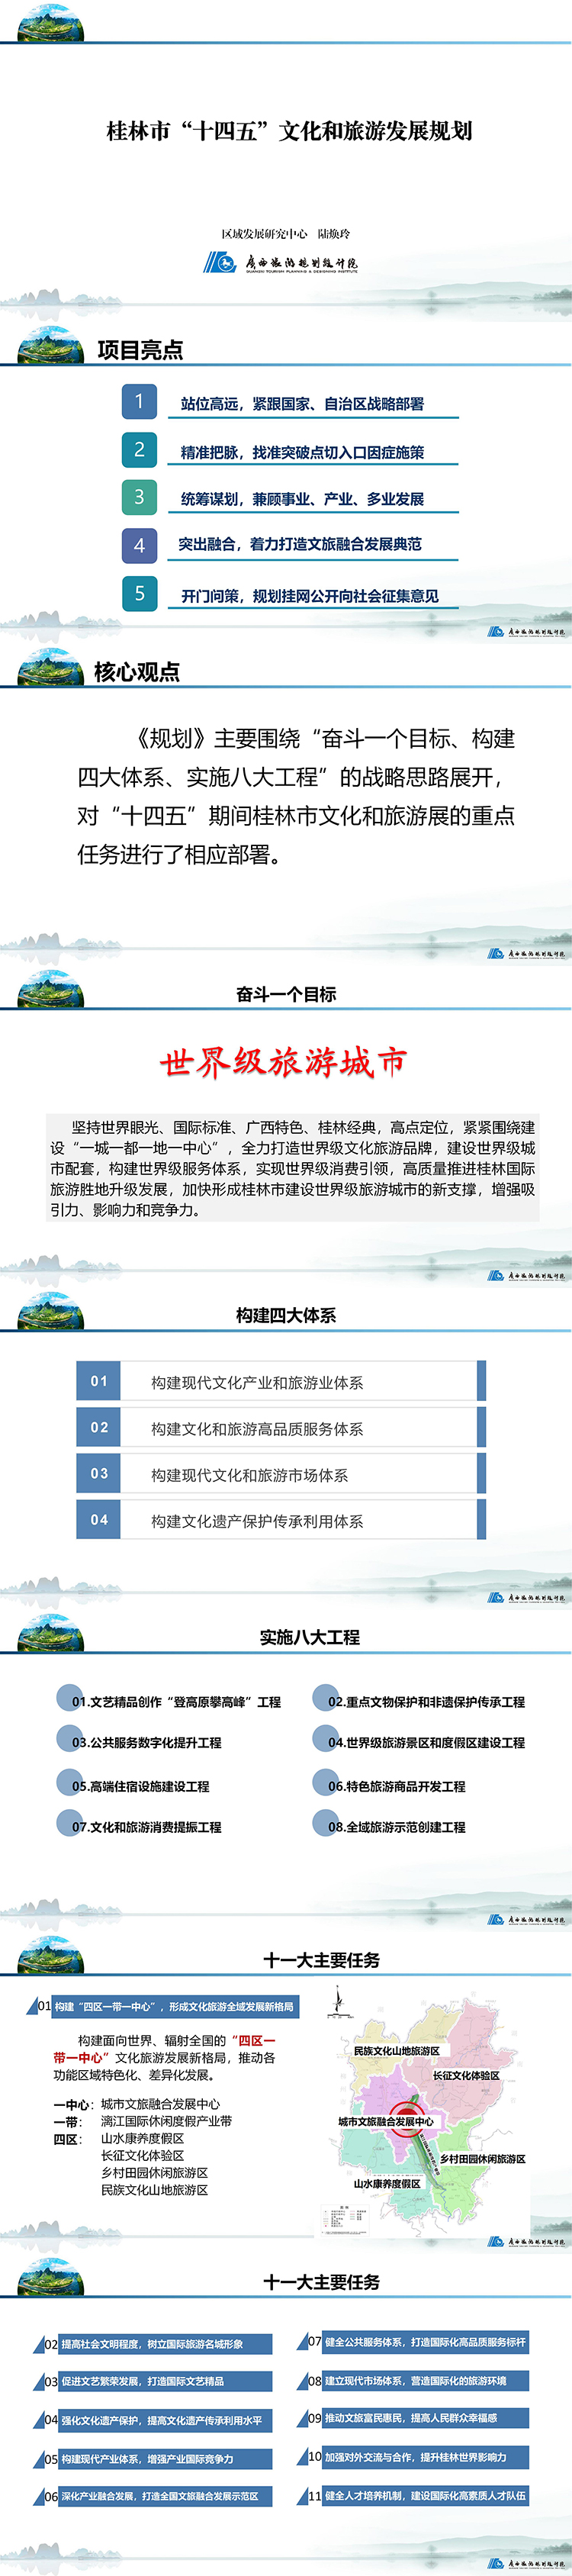 《桂林市“十四五”文化和旅行发展规划》 - 副本.jpg